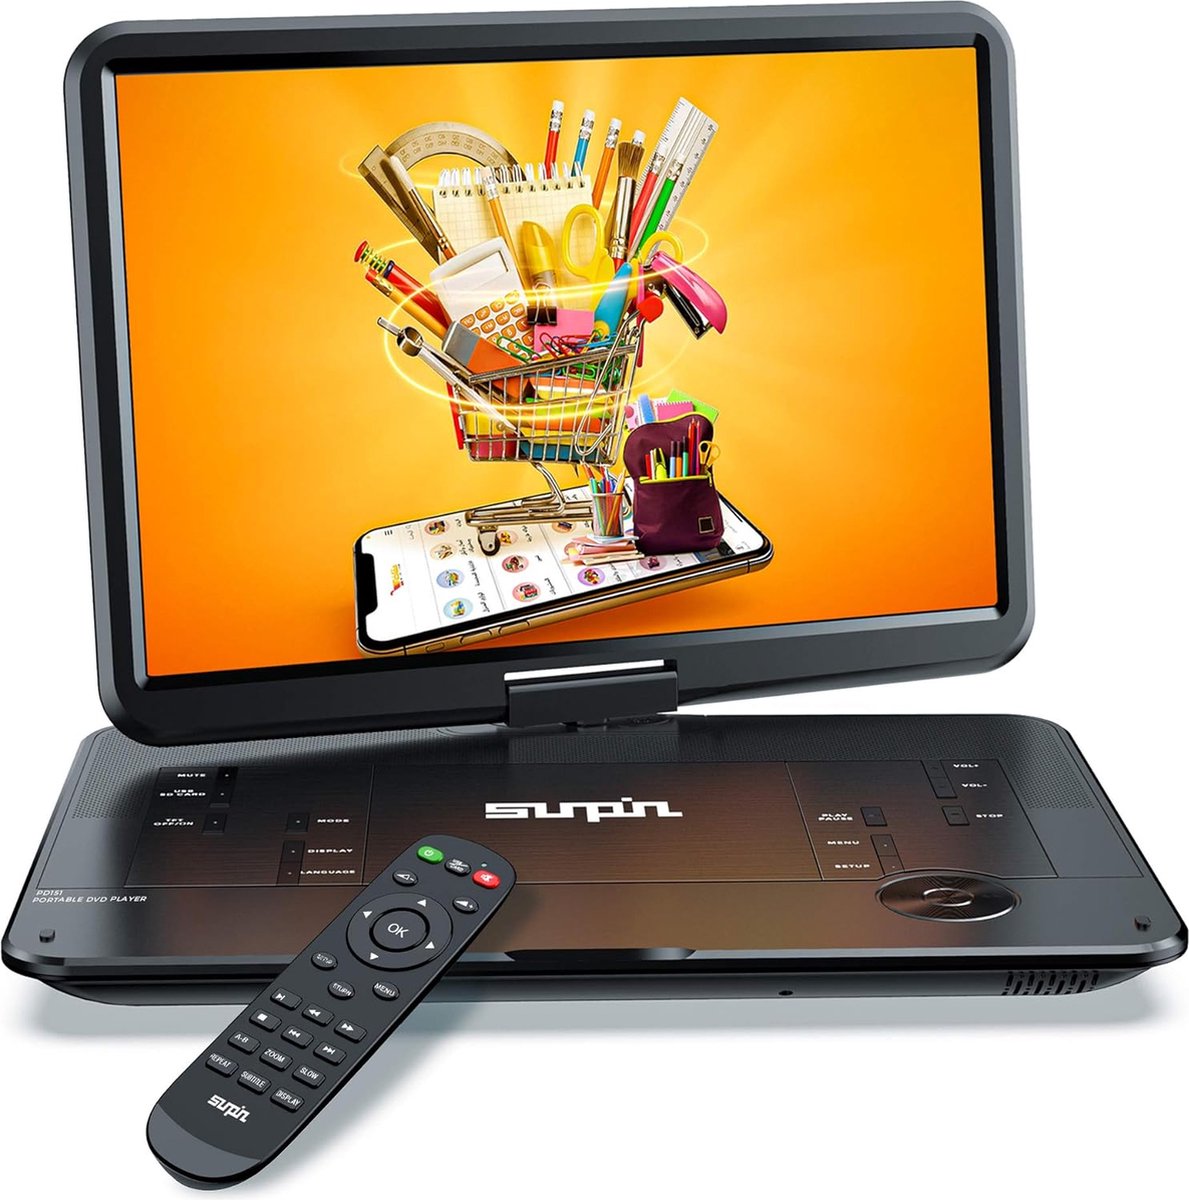 Lecteur DVD portable YOTON 12,5 avec écran rotatif HD 10,5 pour voiture  et Enfants